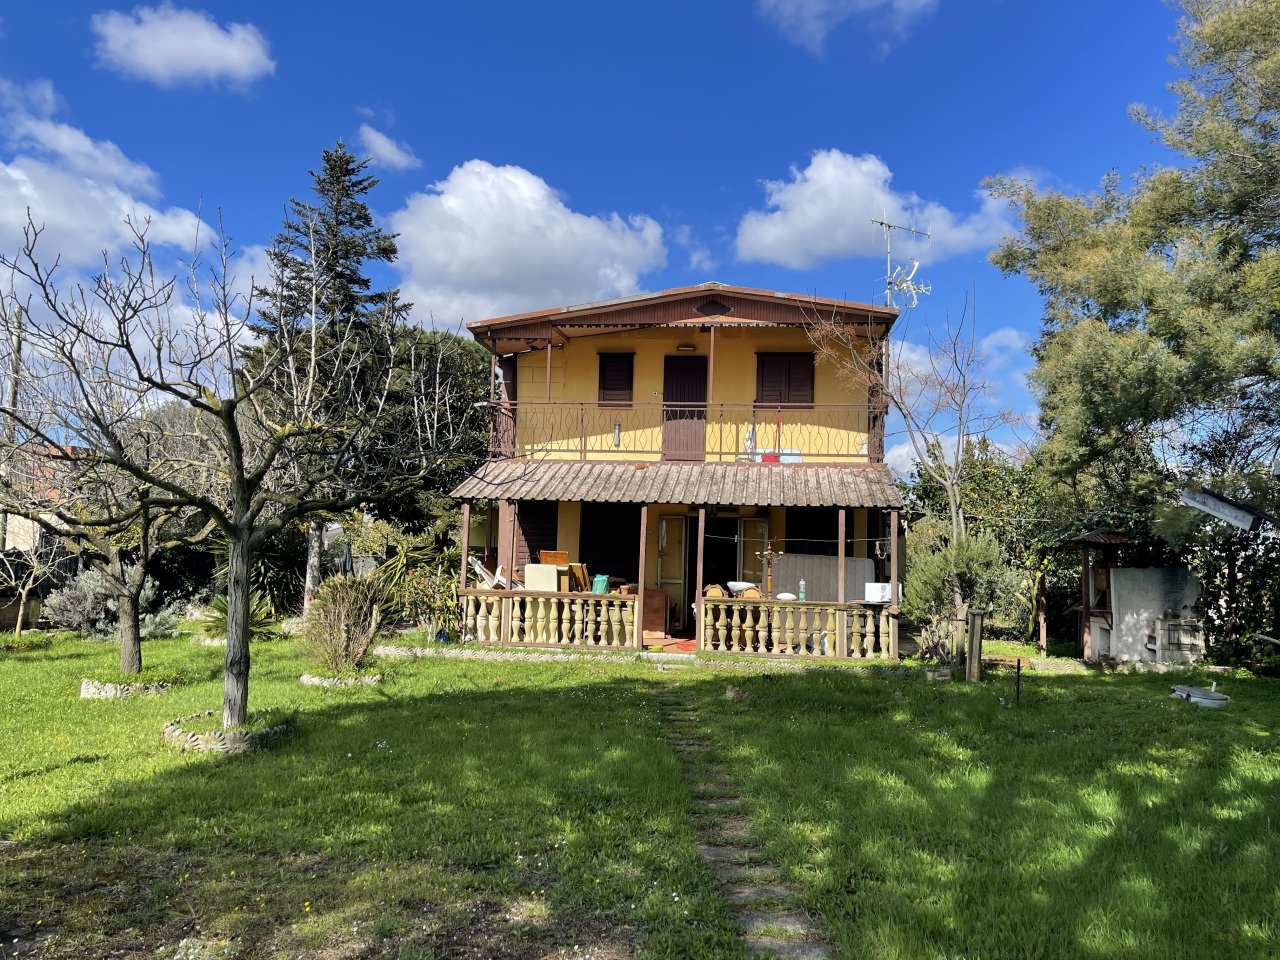 Villa in vendita a Nettuno, 7 locali, prezzo € 160.000 | PortaleAgenzieImmobiliari.it